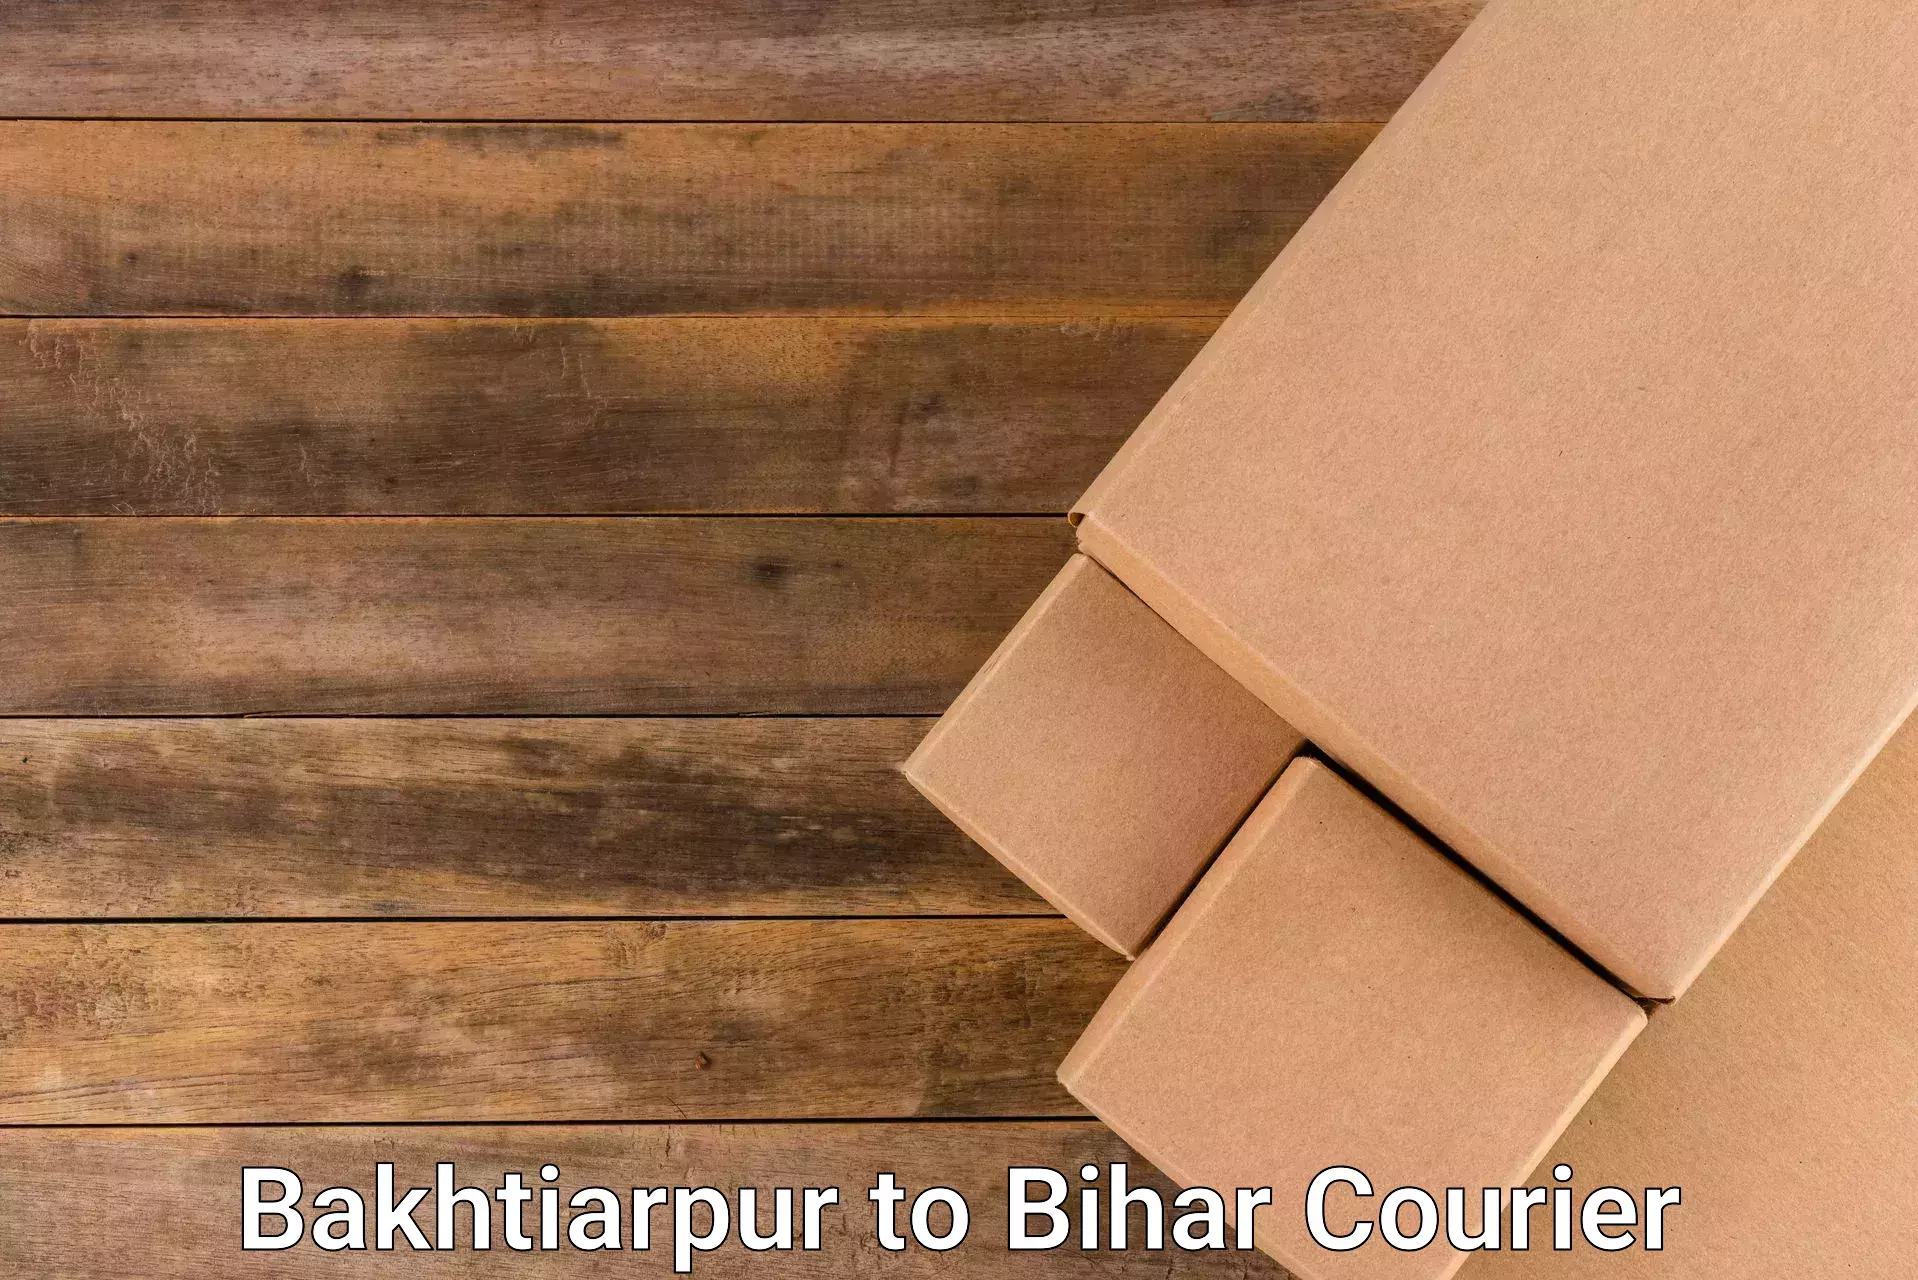 Courier service comparison Bakhtiarpur to Bihar